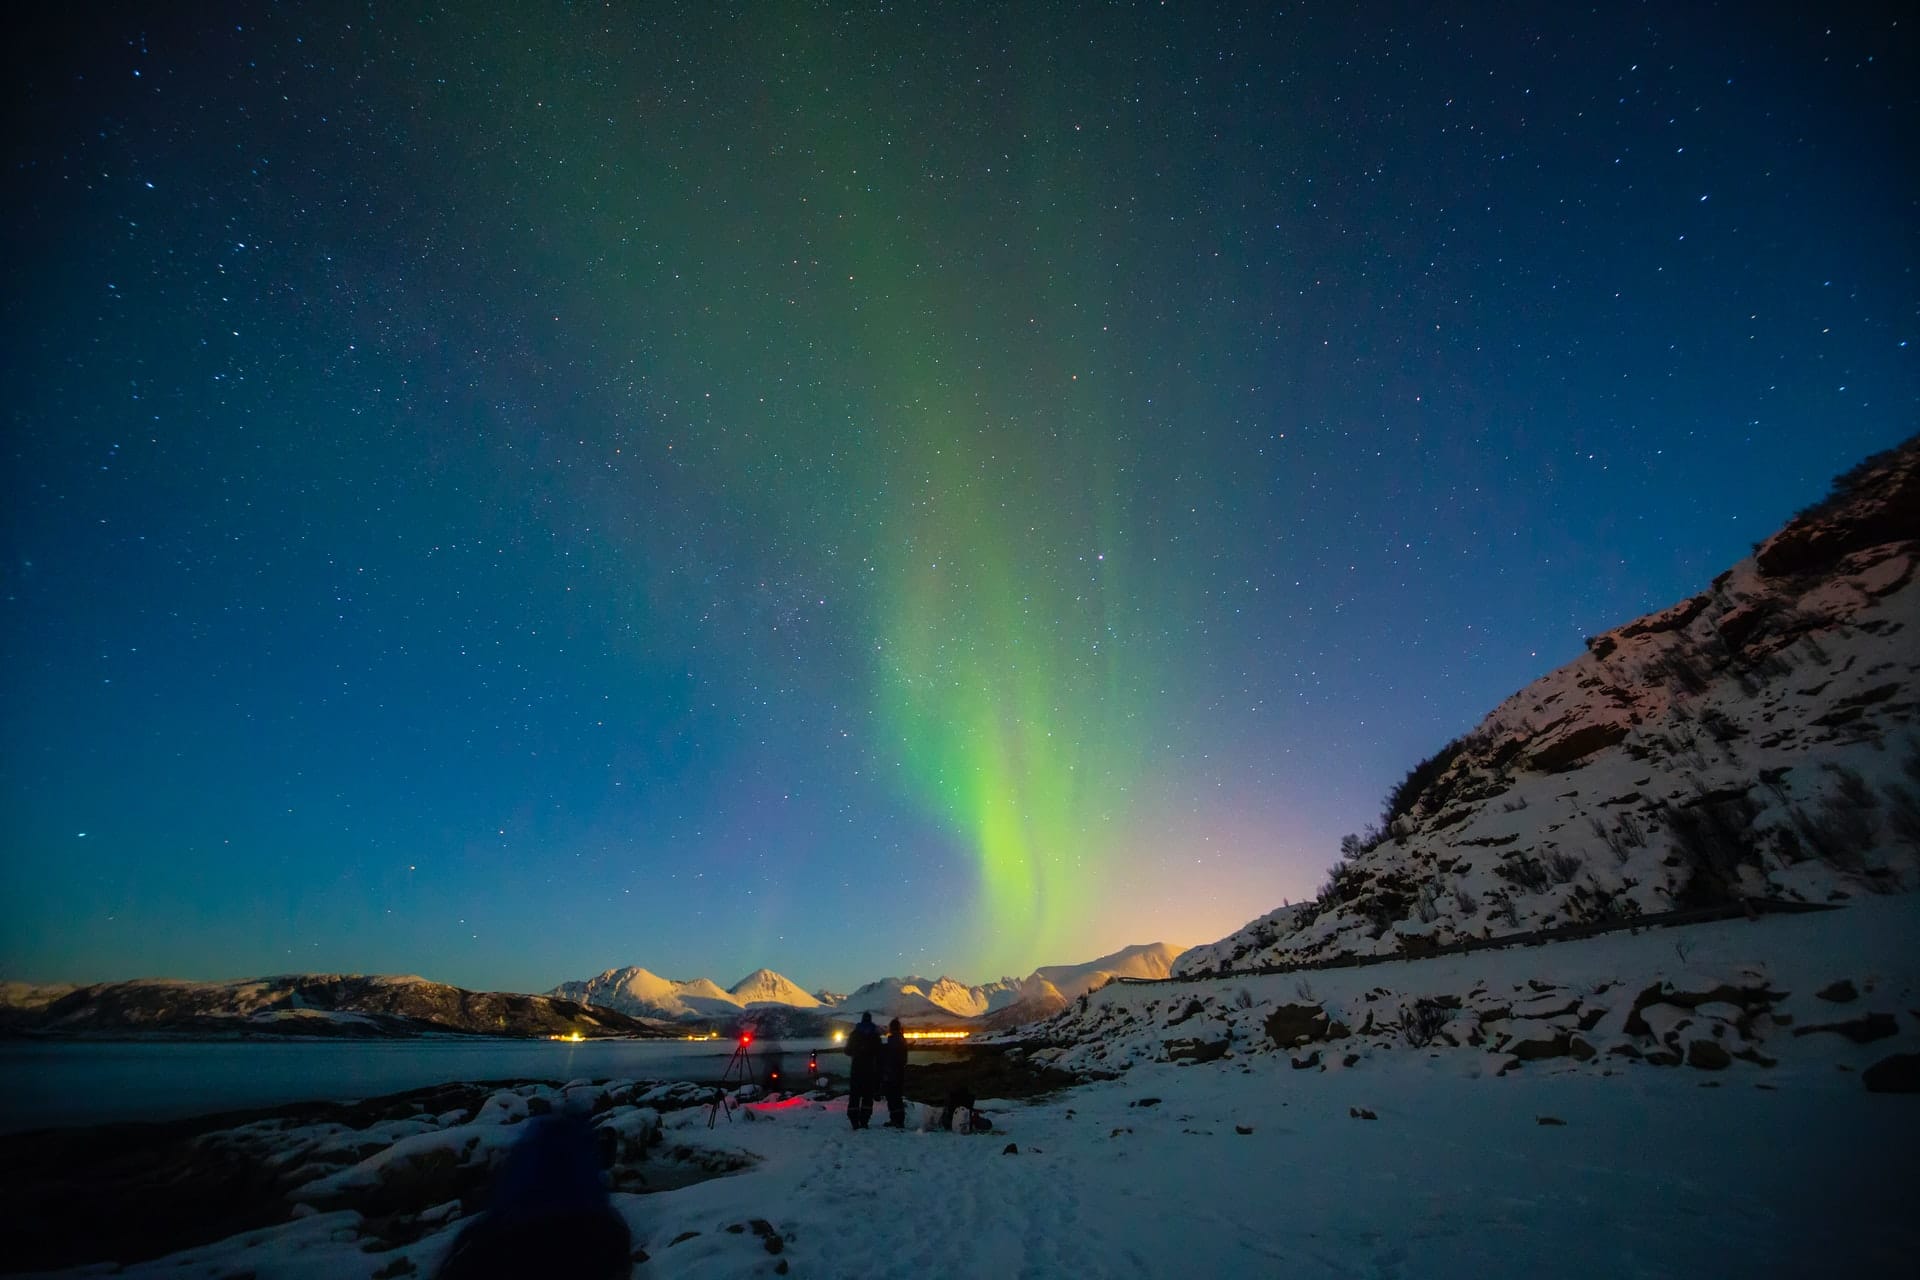 Personnes photographiant les aurores boréales en Norvège du Nord